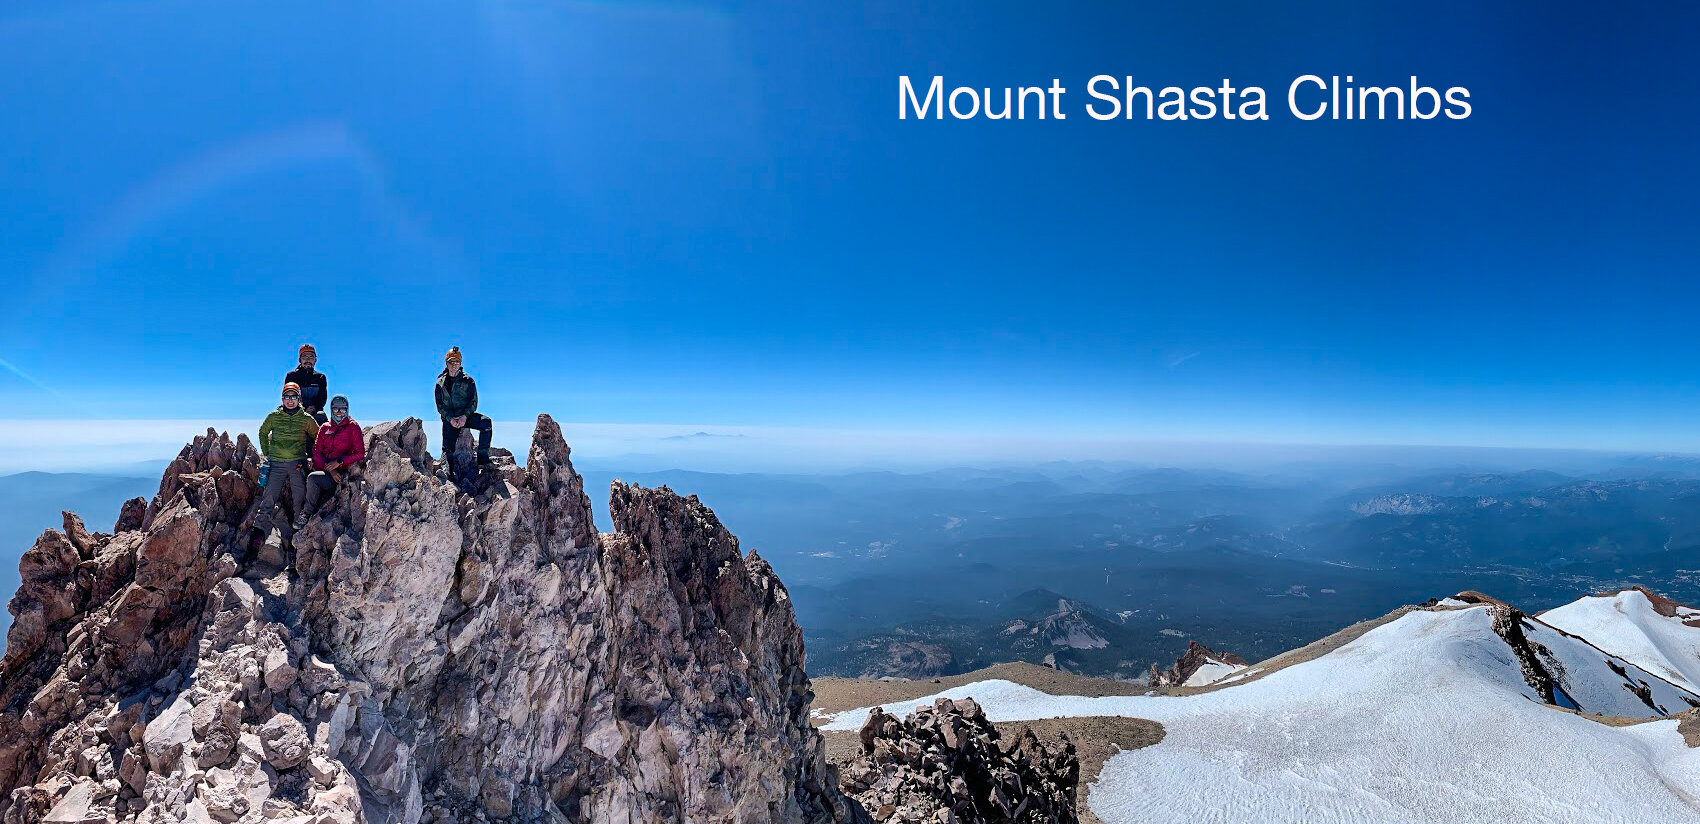 The Summit of Mount Shasta